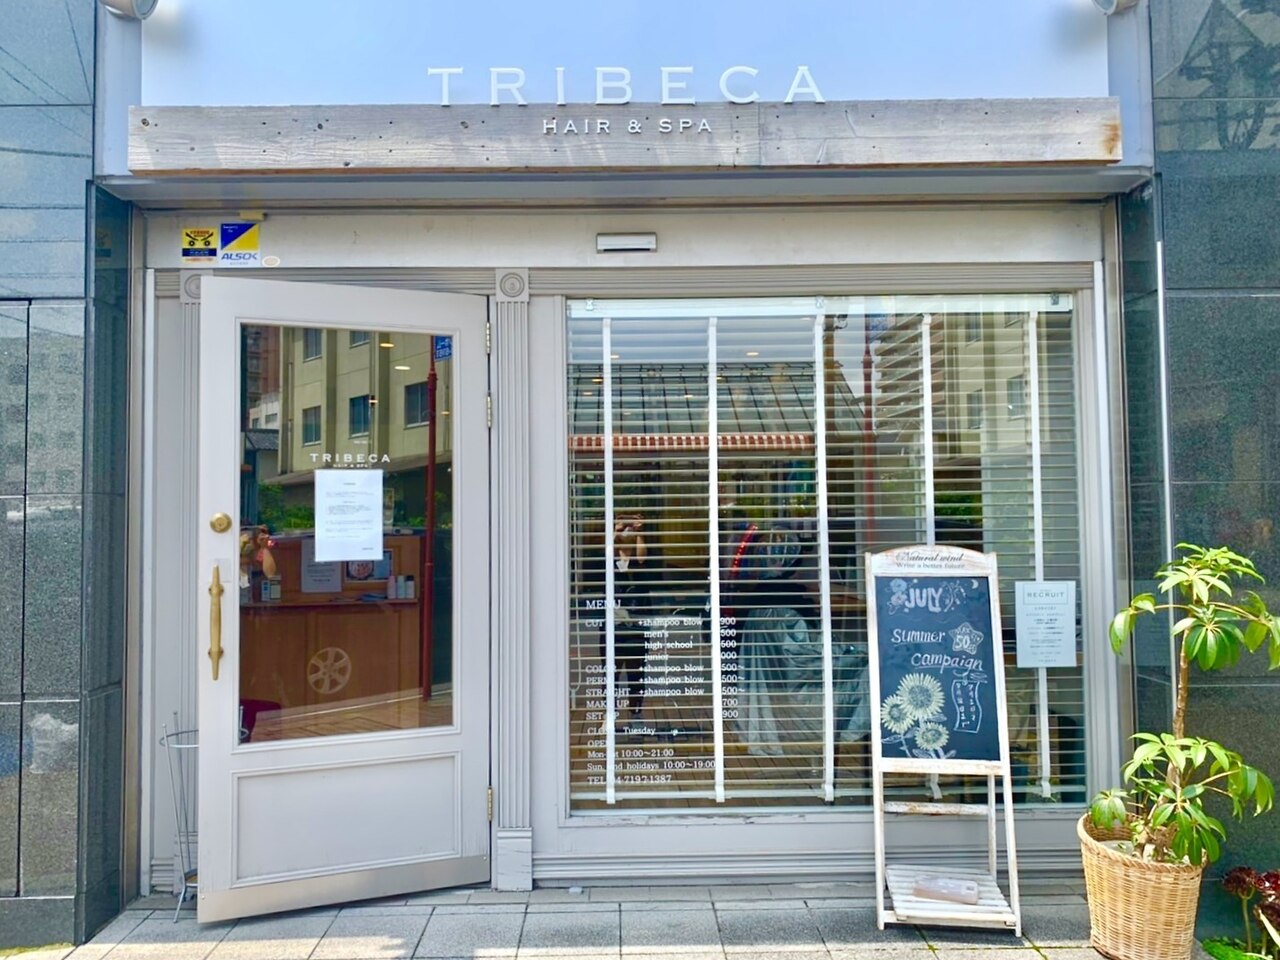 Tribeca – Tribeca